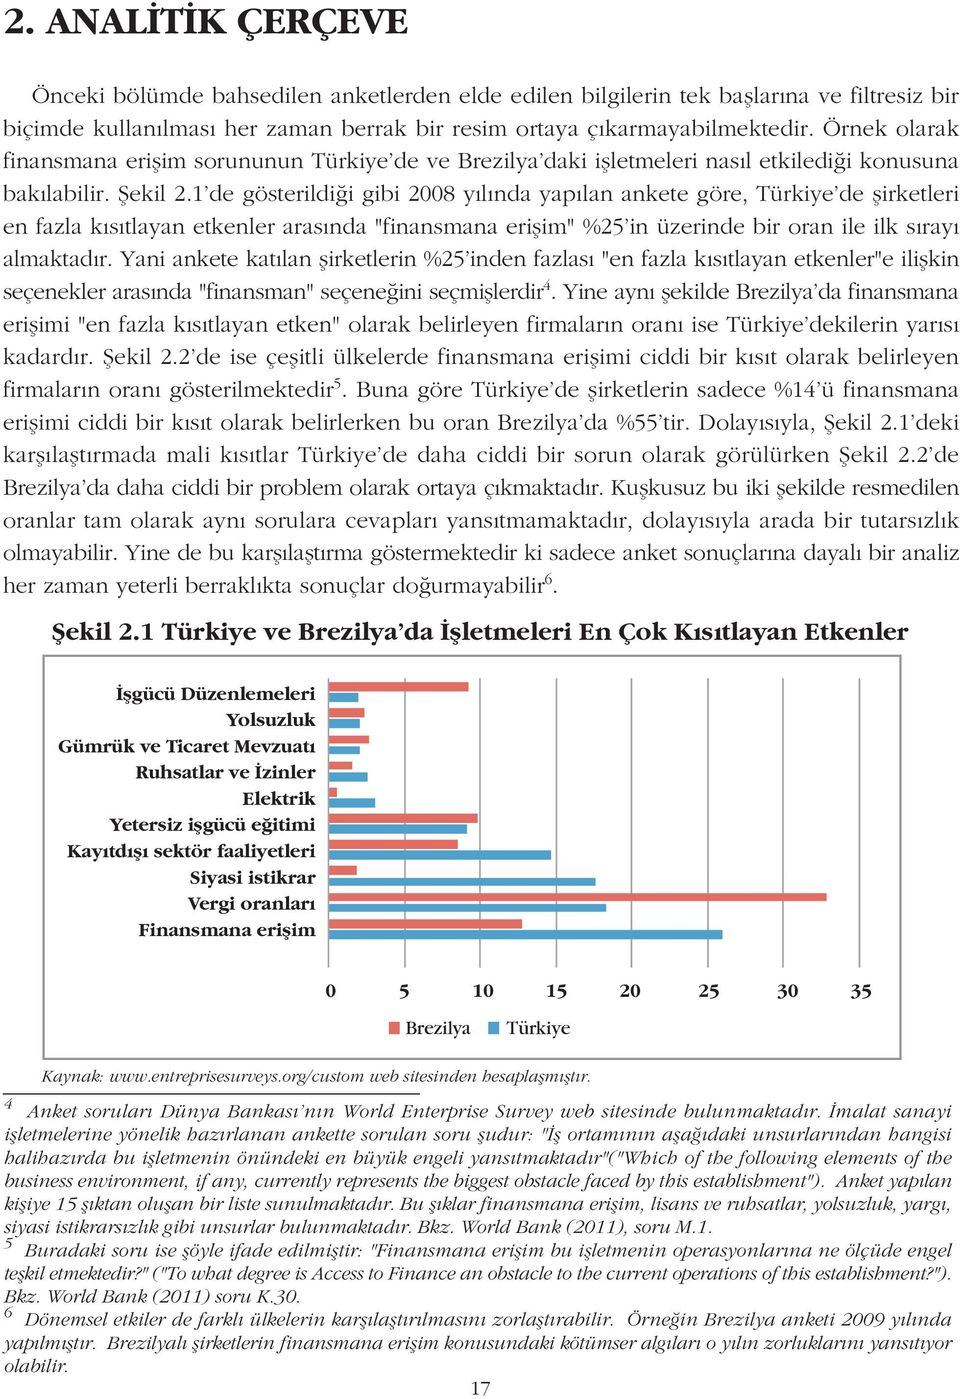 1'de gösterildiði gibi 2008 yýlýnda yapýlan ankete göre, Türkiye'de þirketleri en fazla kýsýtlayan etkenler arasýnda "finansmana eriþim" %25'in üzerinde bir oran ile ilk sýrayý almaktadýr.